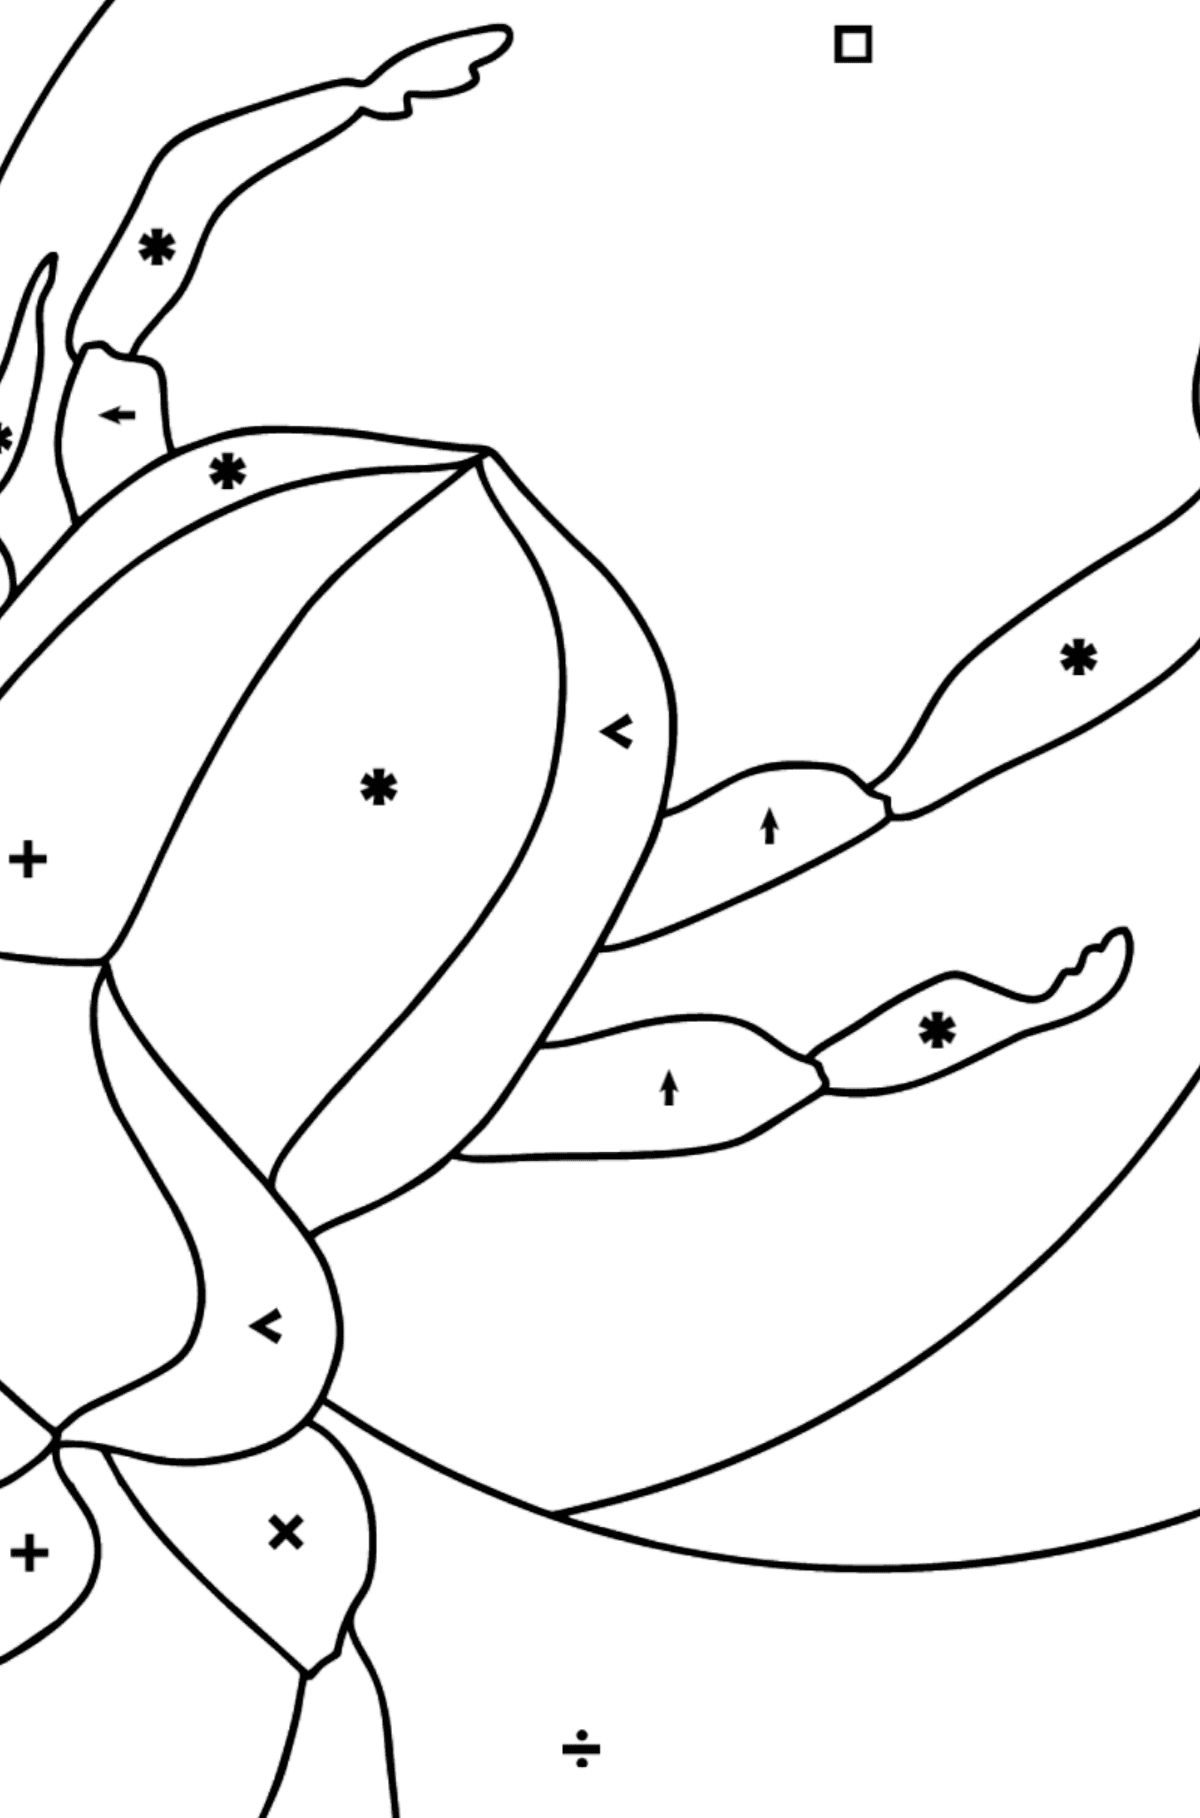 Ausmalbild - Ein Skarabäus-Käfer oder ein Symbol der Erneuerung - Ausmalen nach Symbolen für Kinder